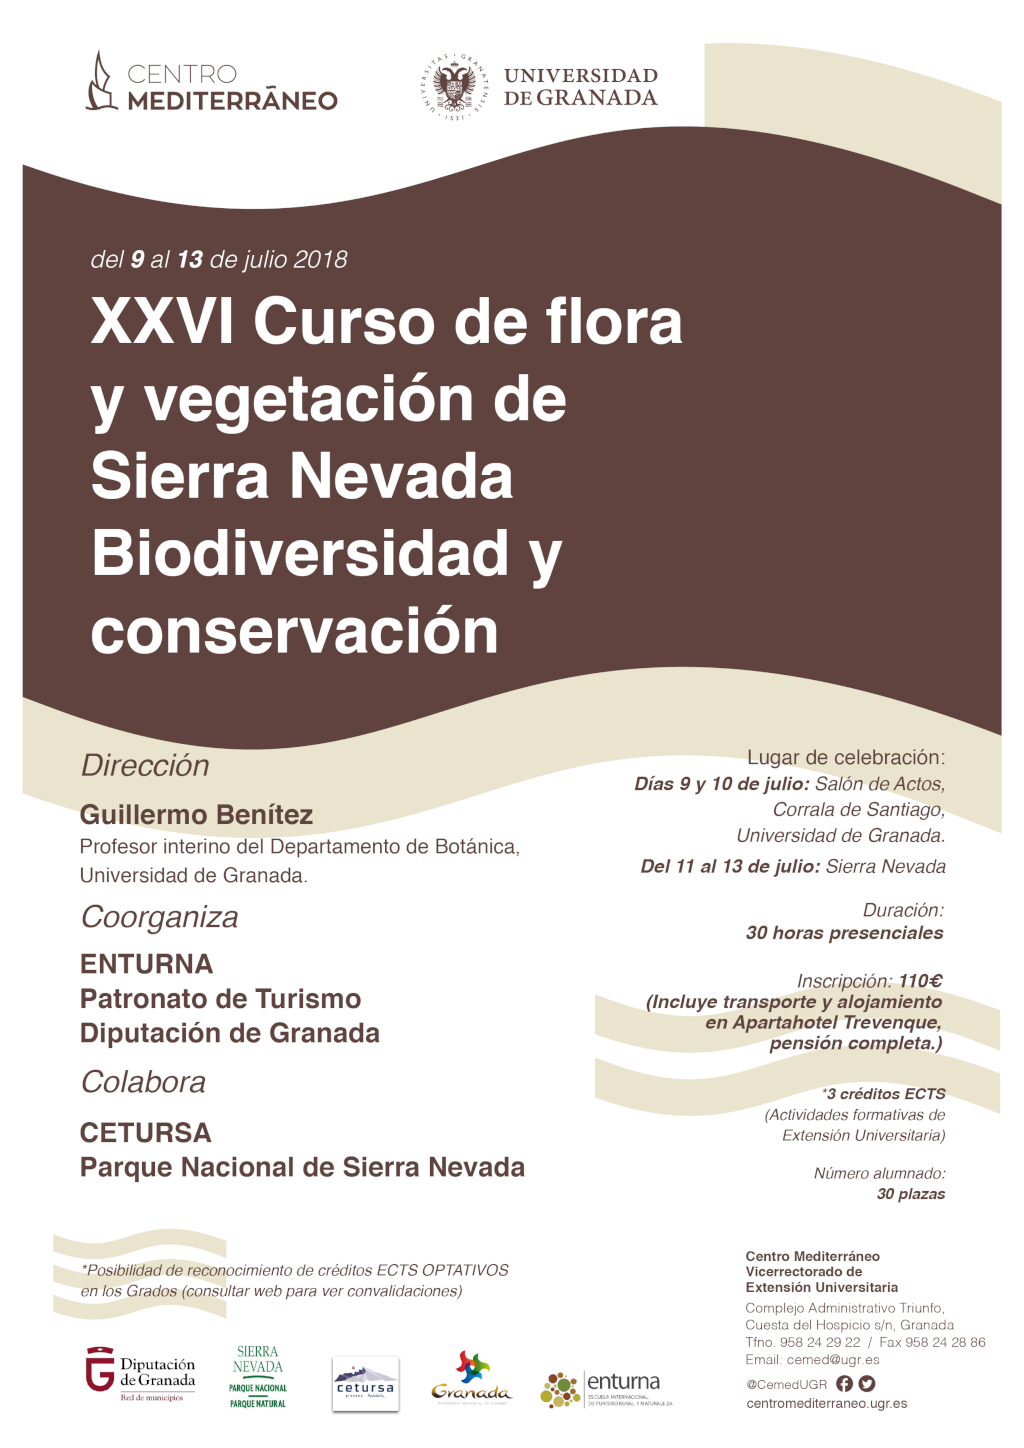 XXVI Curso de flora y vegetación de Sierra Nevada. Biodiversidad y conservación.